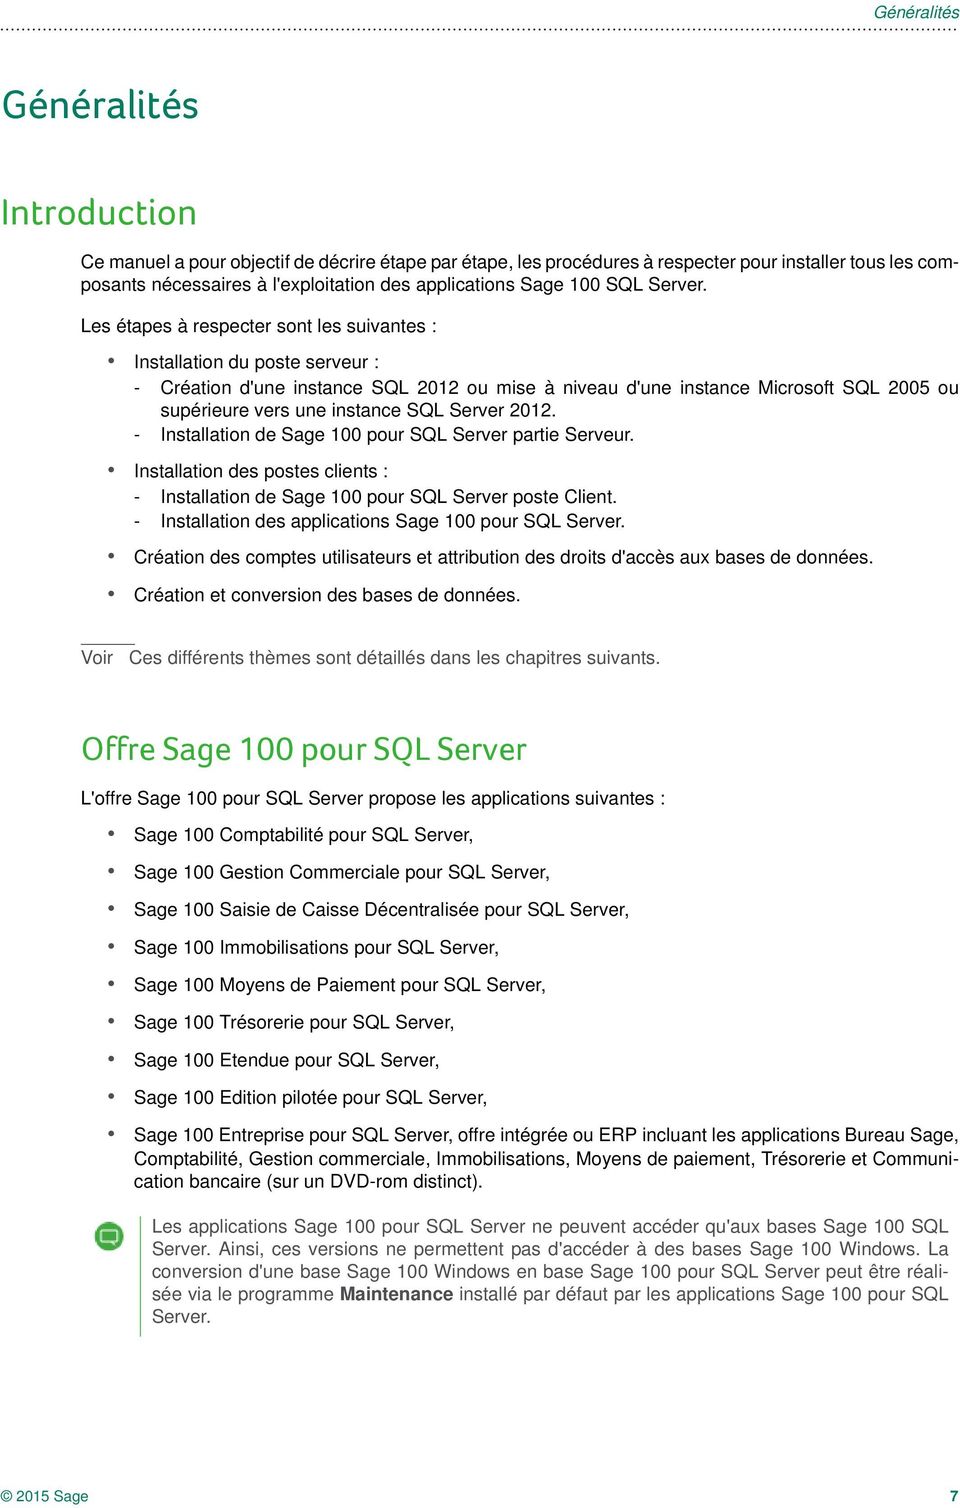 Les étapes à respecter sont les suivantes : Installation du poste serveur : - Création d'une instance SQL 2012 ou mise à niveau d'une instance Microsoft SQL 2005 ou supérieure vers une instance SQL